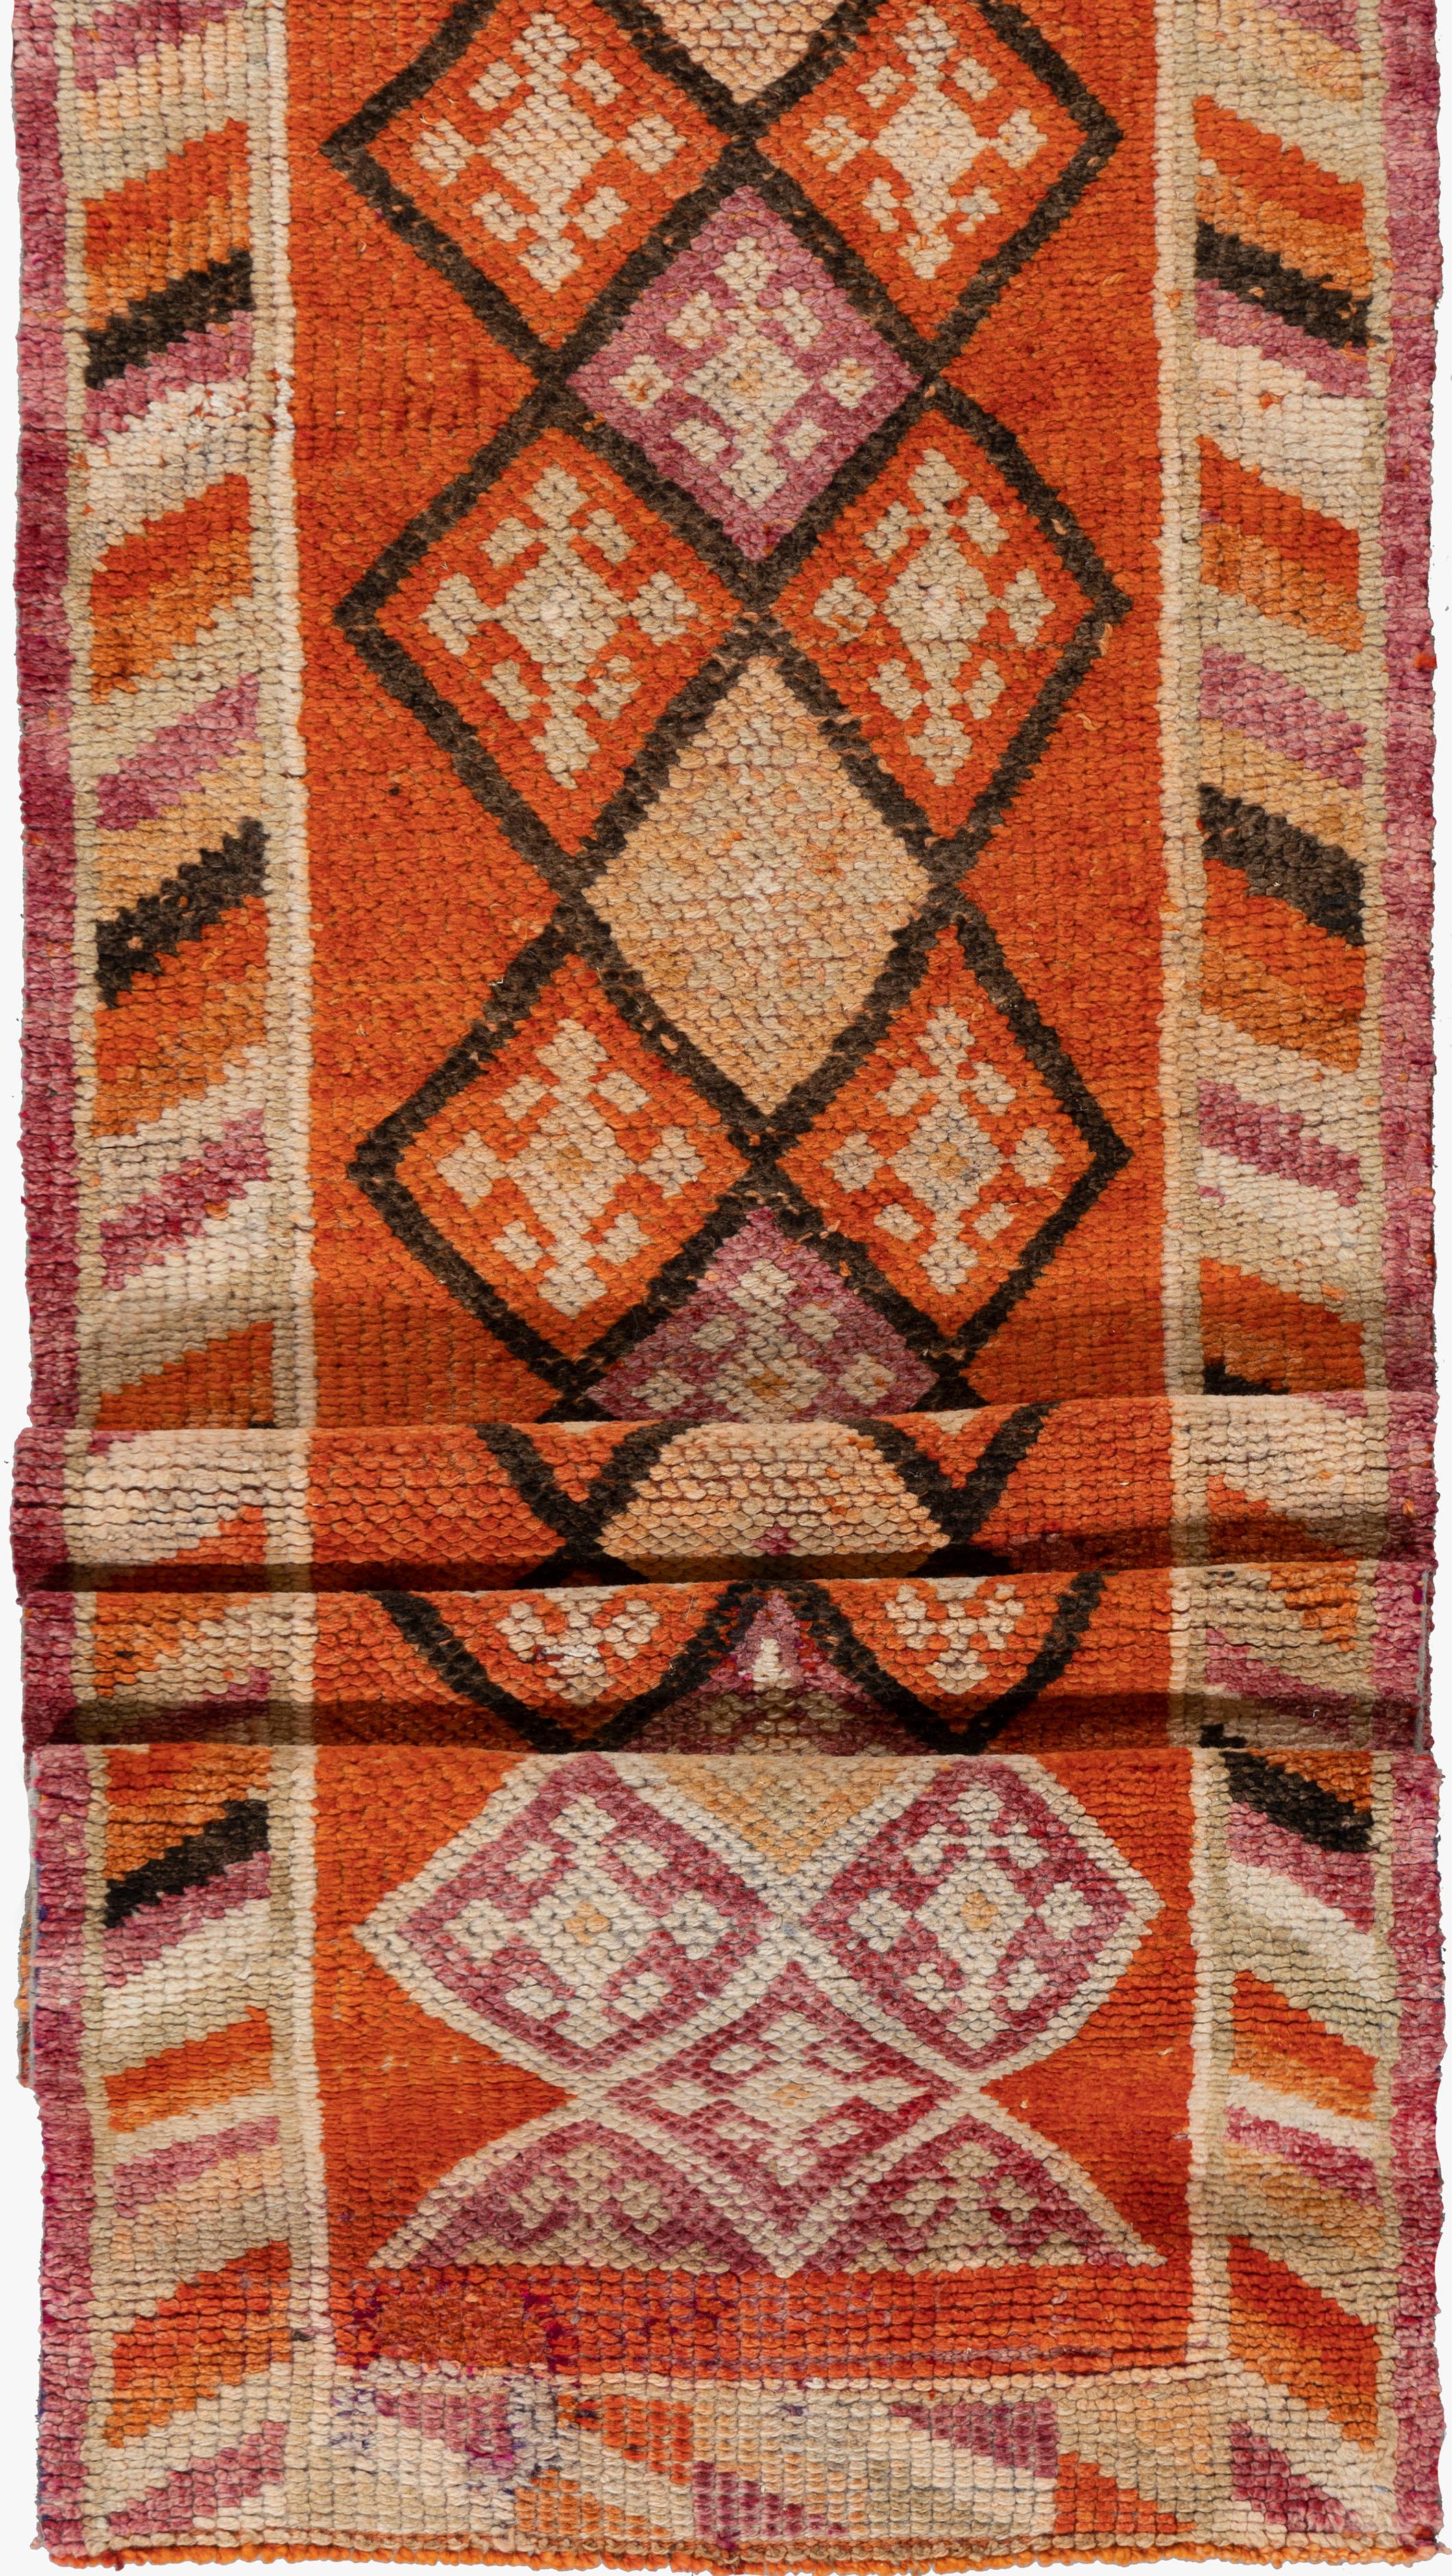 Vintage Turkish Oushak Runner 2'5 x 12'4. Ces tapis attrayants conviennent à une grande variété d'endroits, mais l'effet significatif des Oushaks est qu'ils rassemblent l'espace, le rendant confortable et chaleureux. La technique artistique de